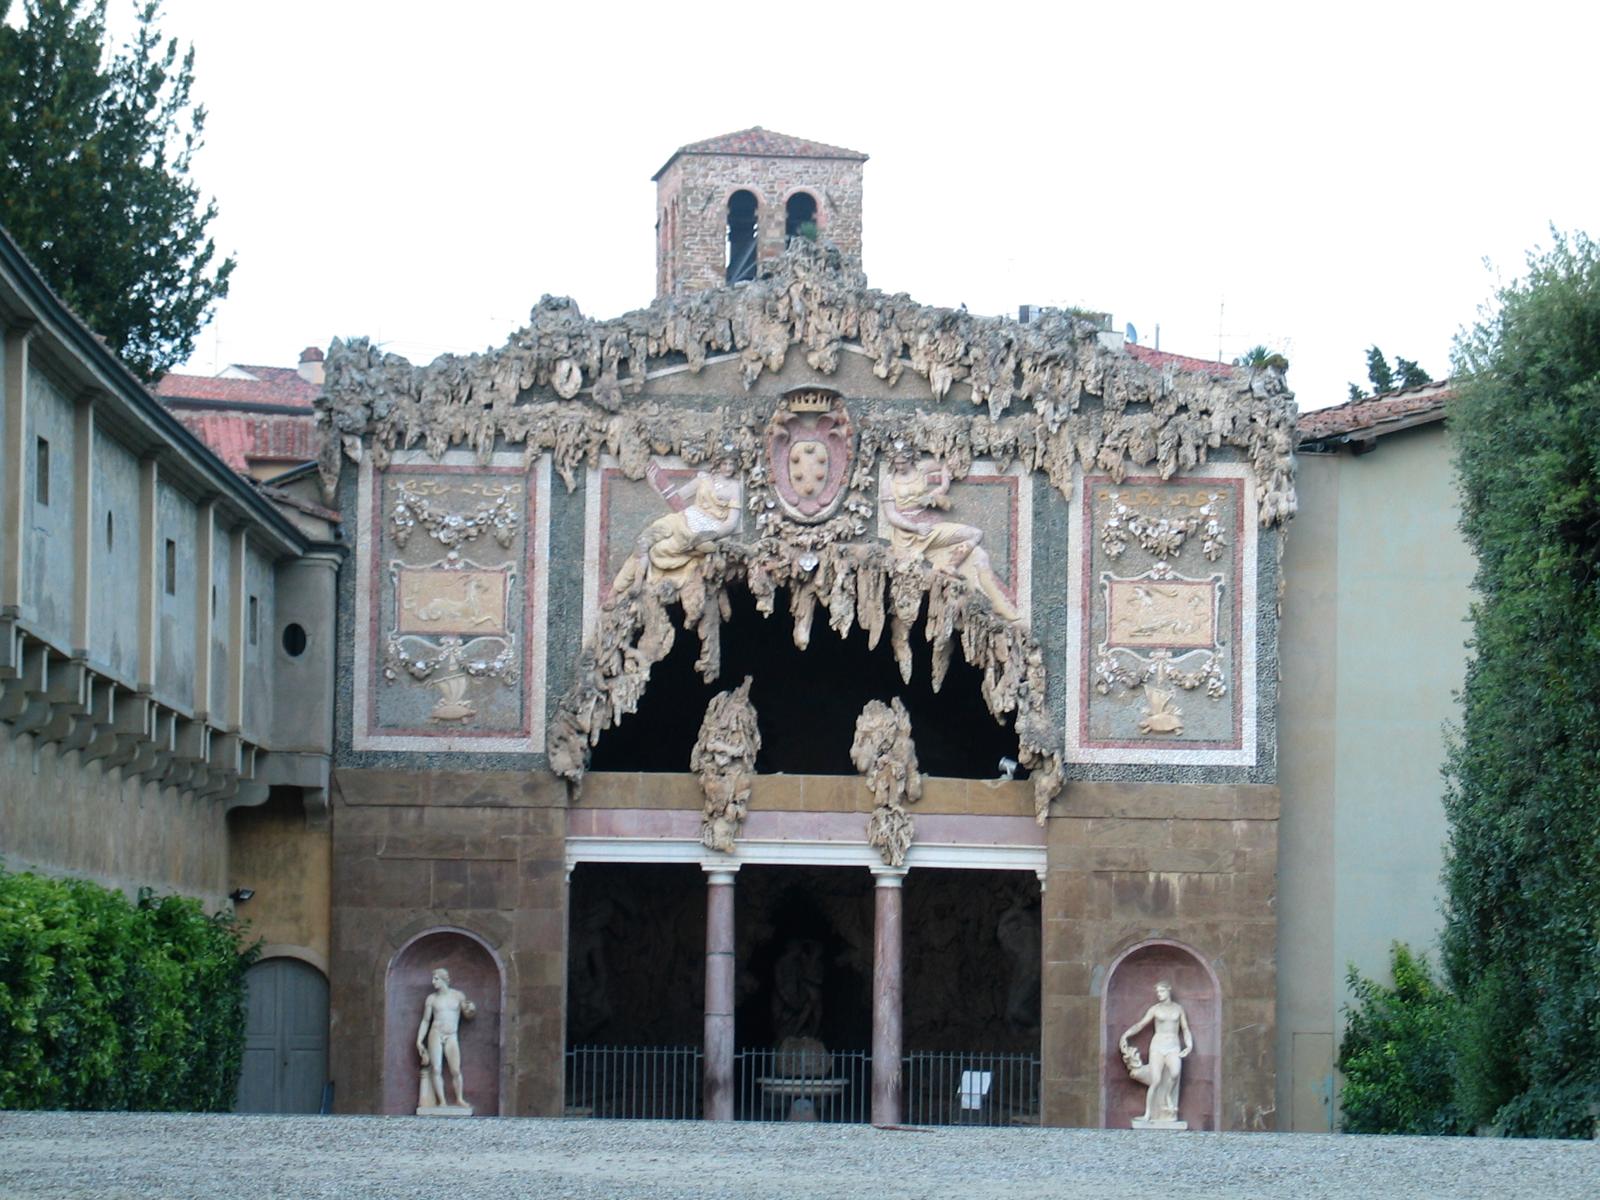 The Pitti Palace